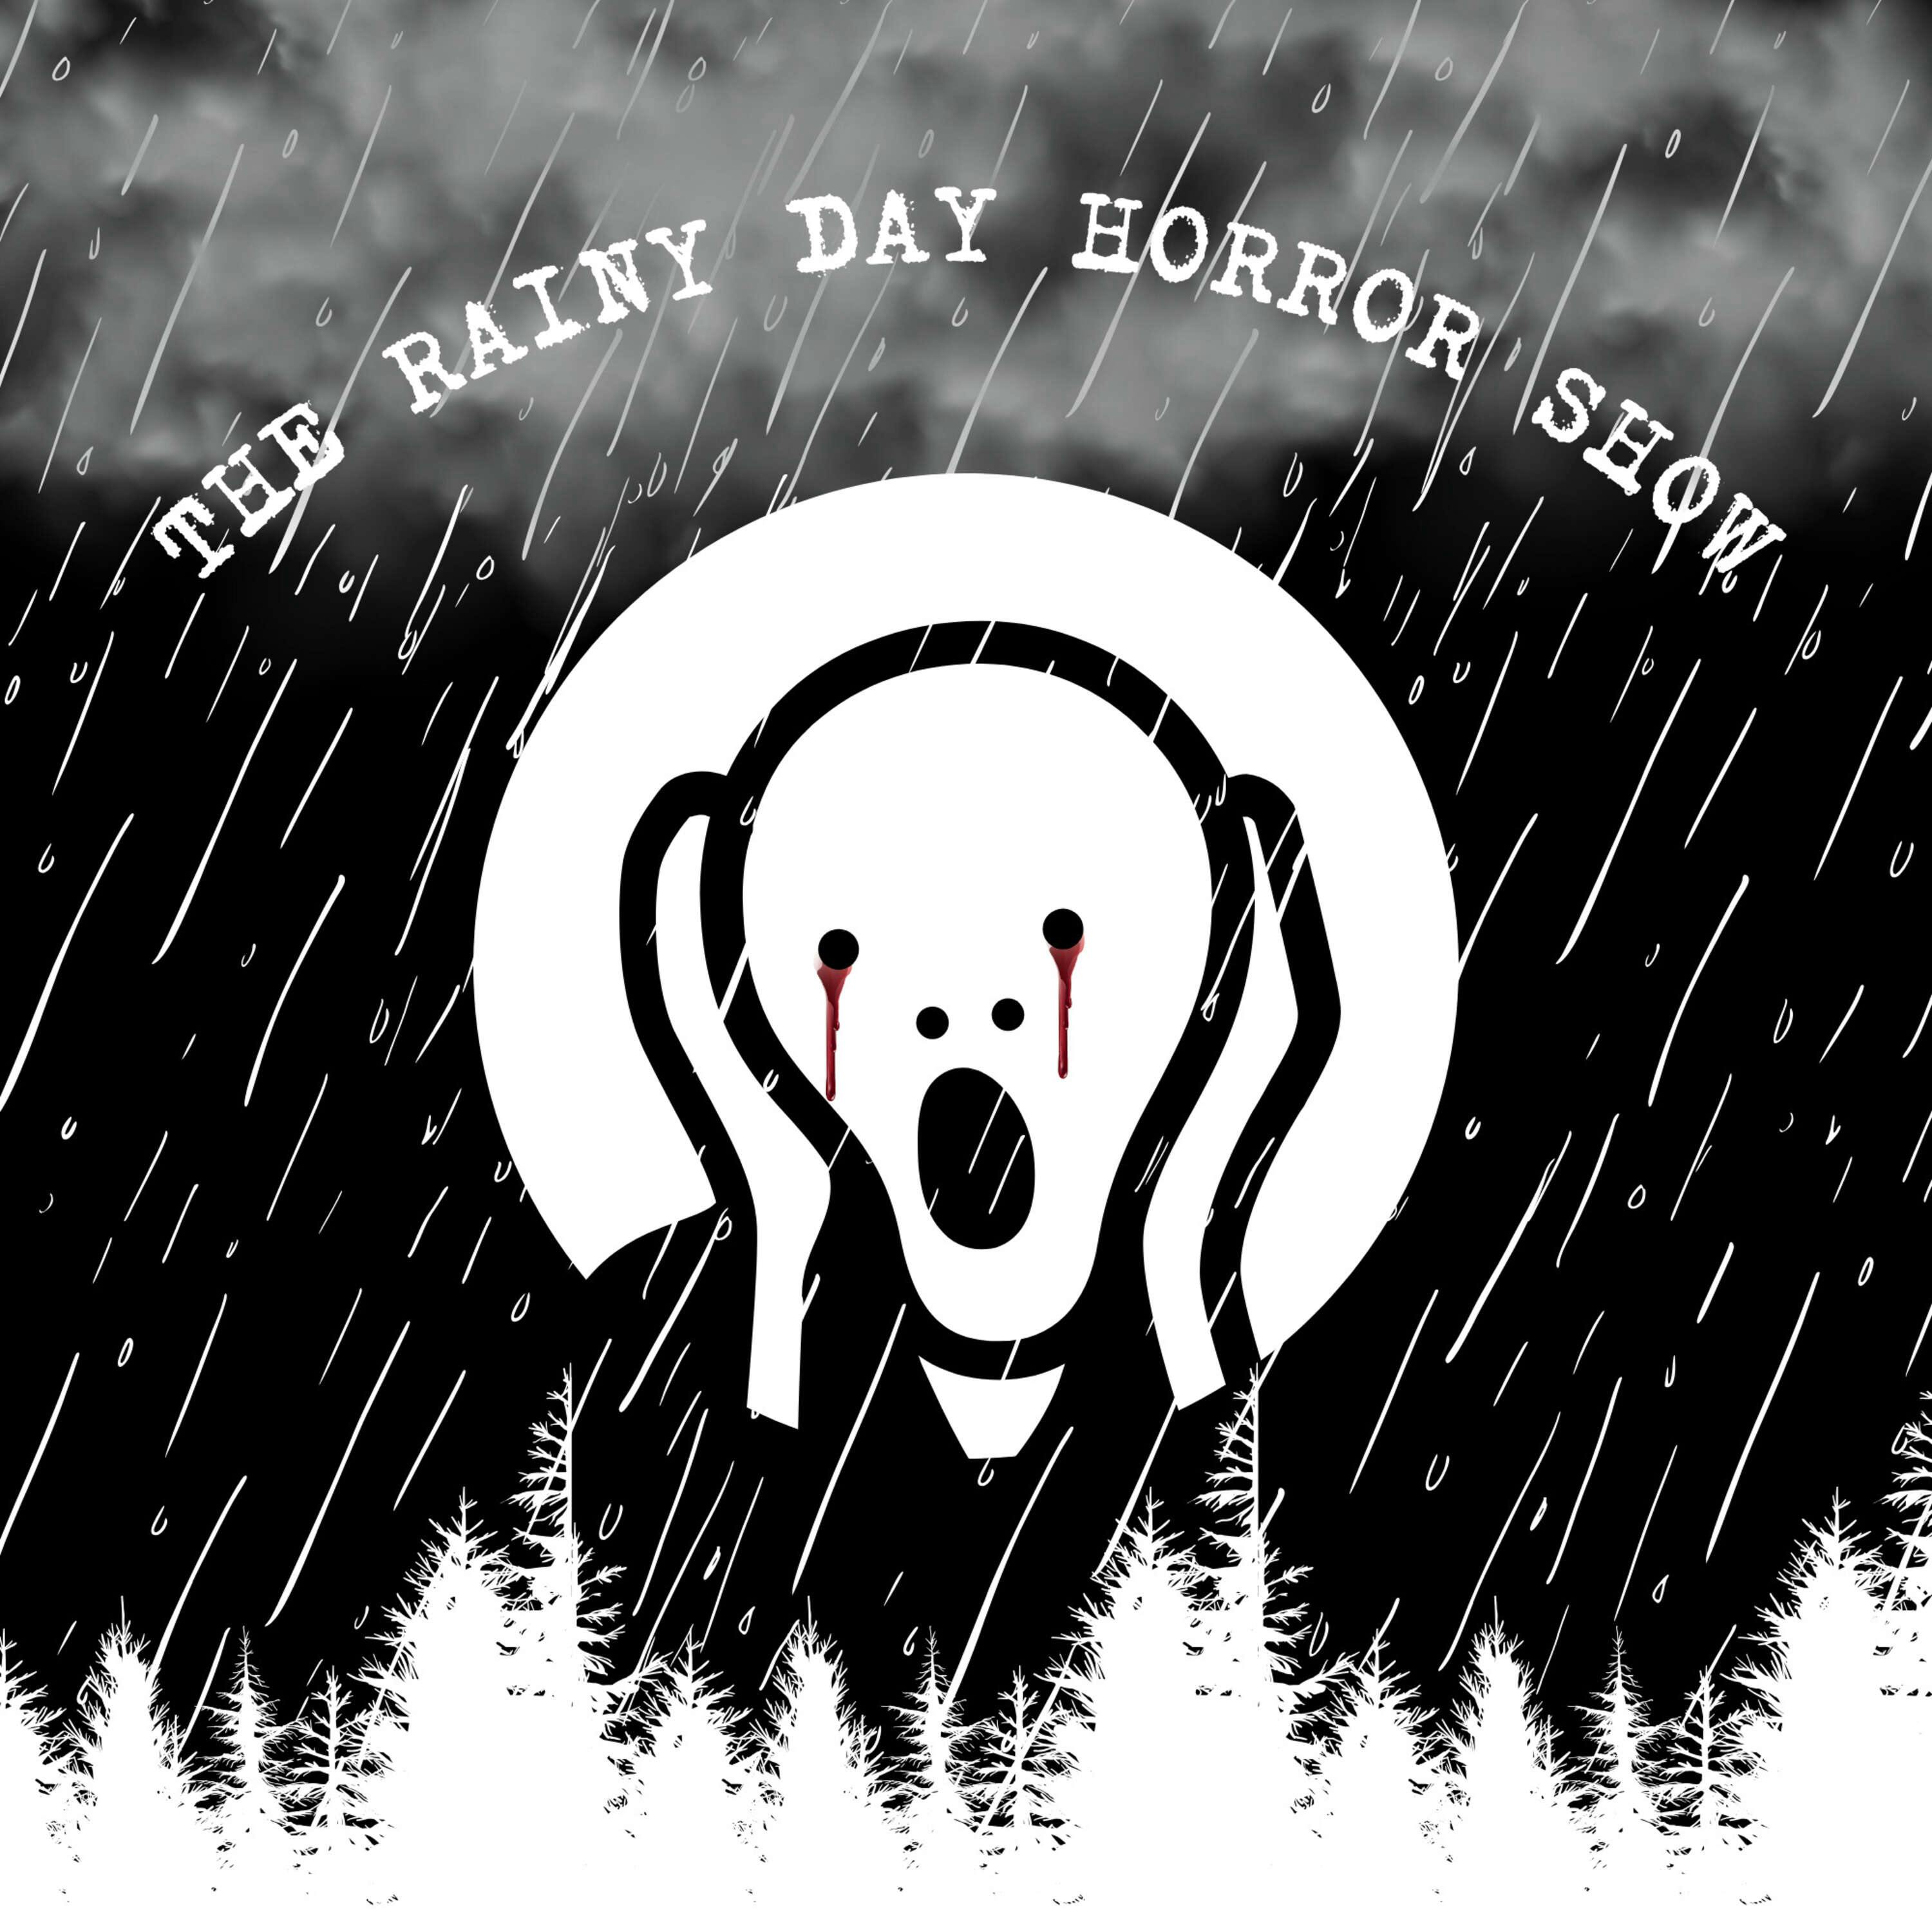 The Rainy Day Horror Show